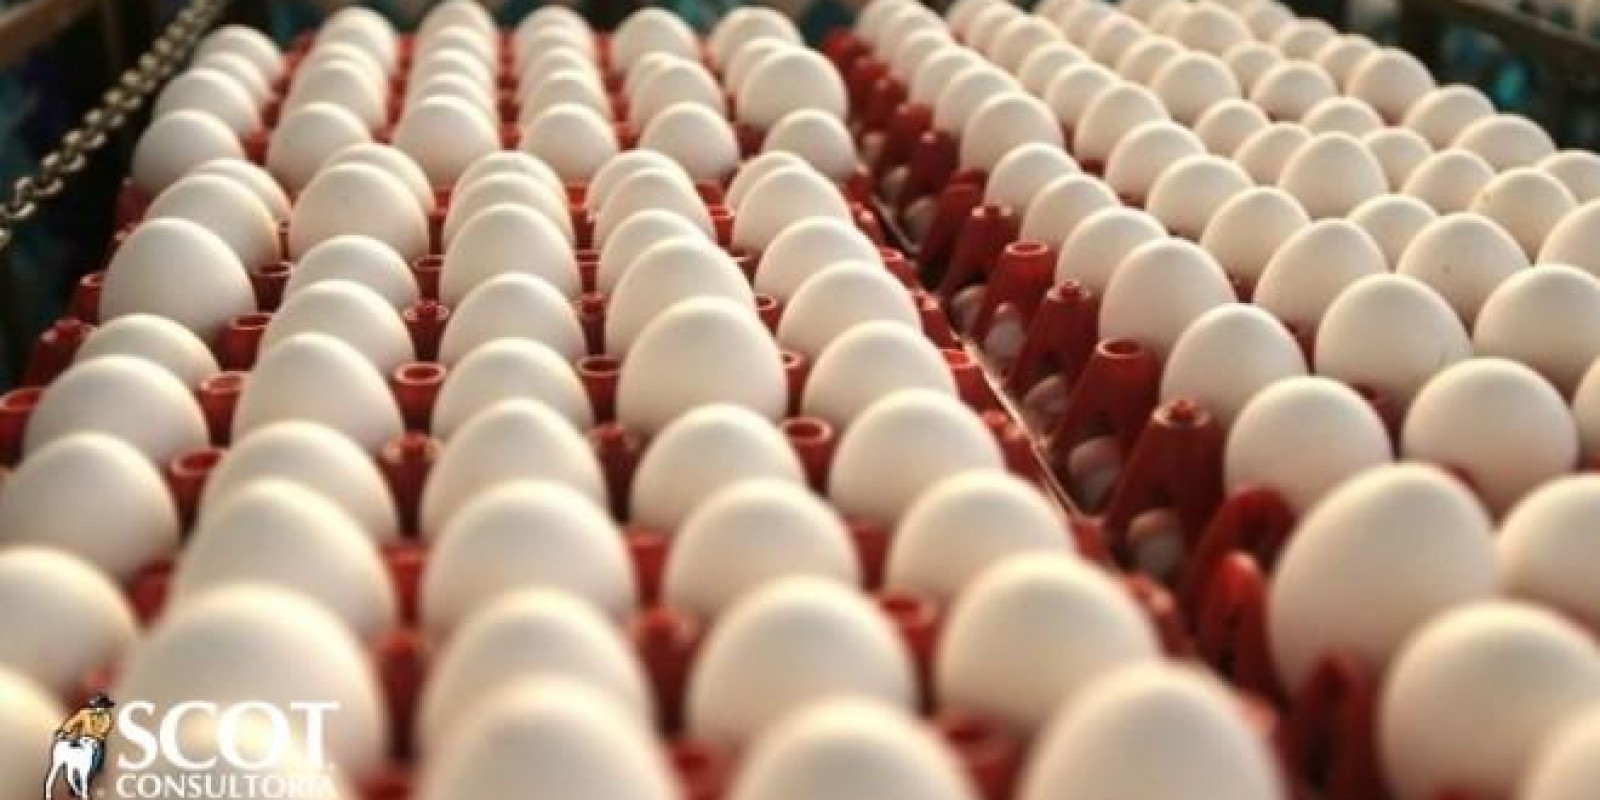 Mercado de ovos com preços menores em 2018